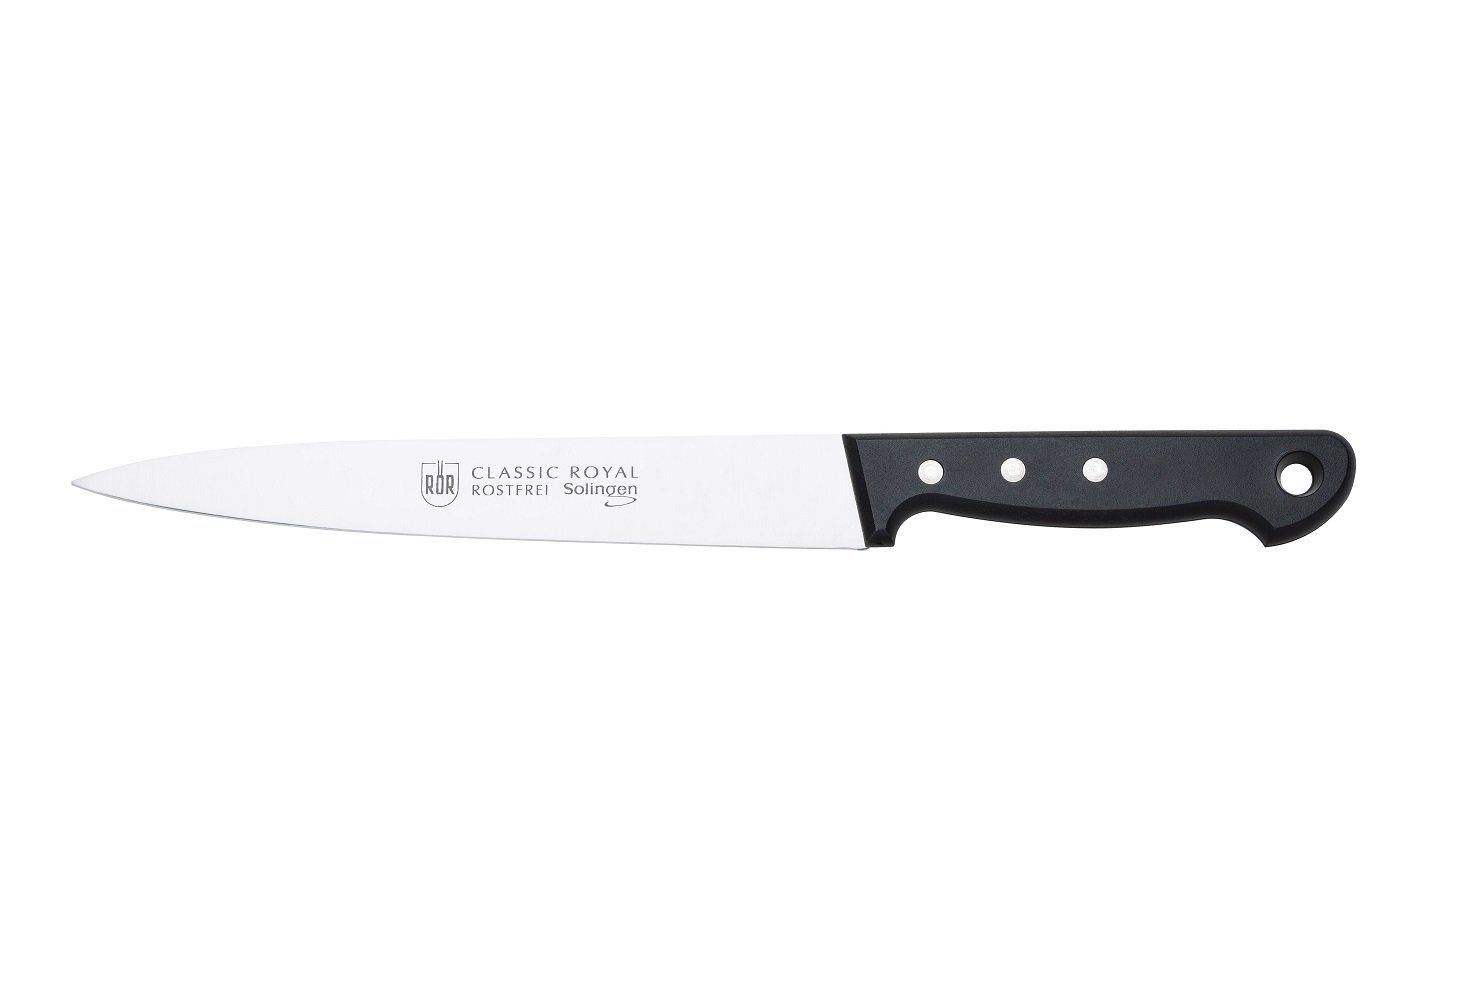 RÖR Fleischmesser 10268, Classic Royal Fleischmesser, hochwertiger Messerstahl - Griff mit Nieten - Made in Solingen